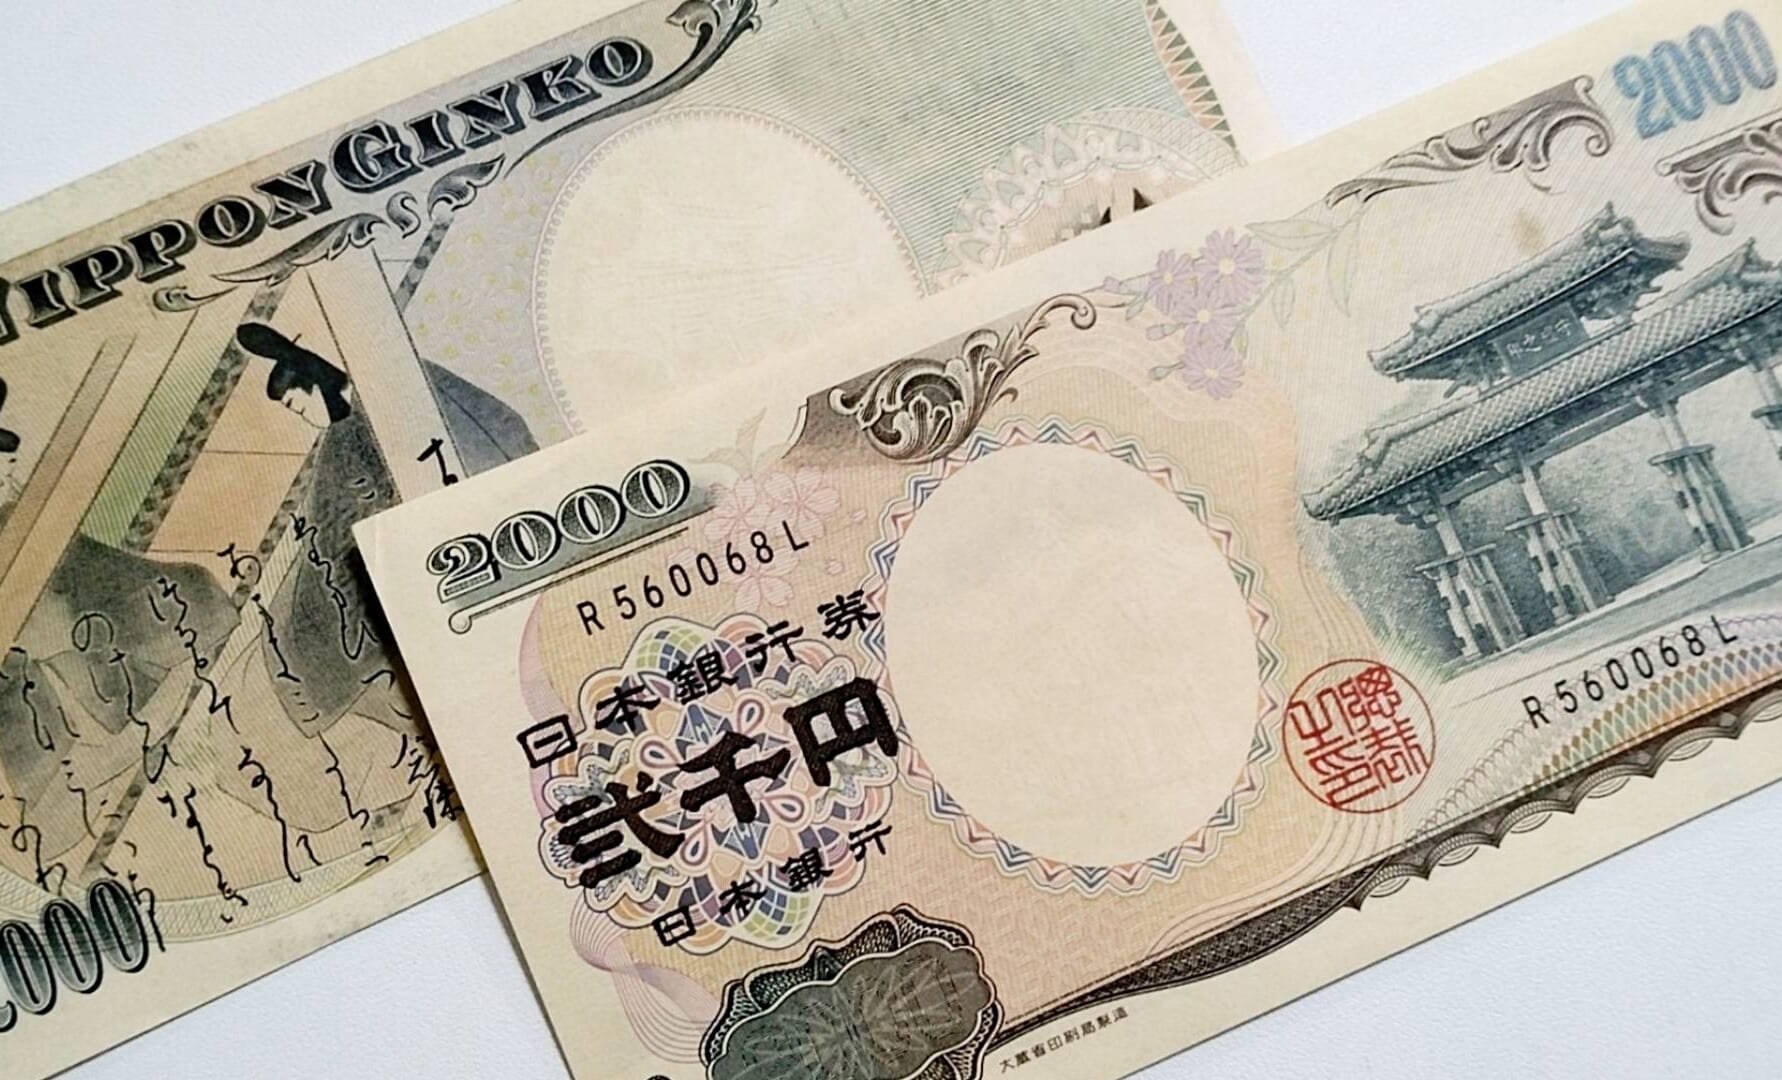 2000 yen bill